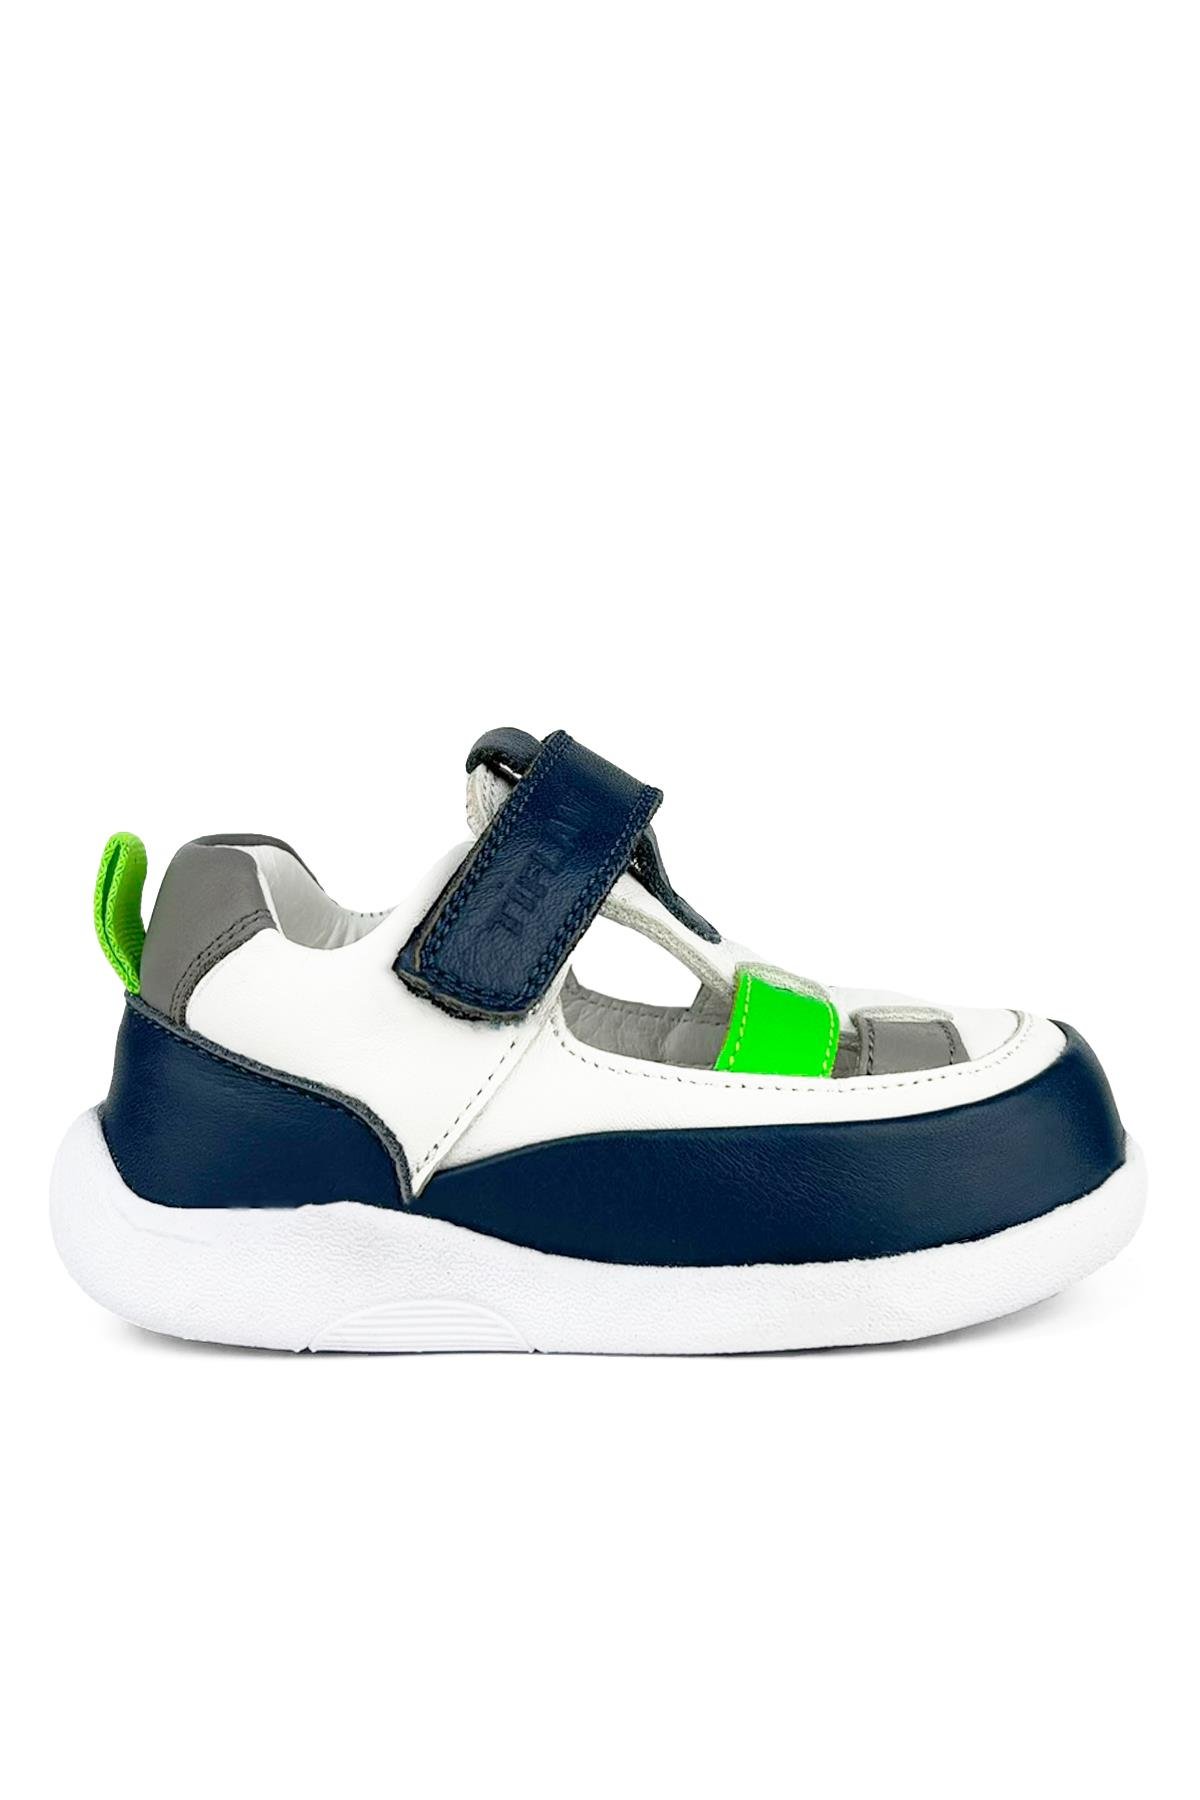 Lacivert - Yeşil Erkek Çocuk Ayakkabı